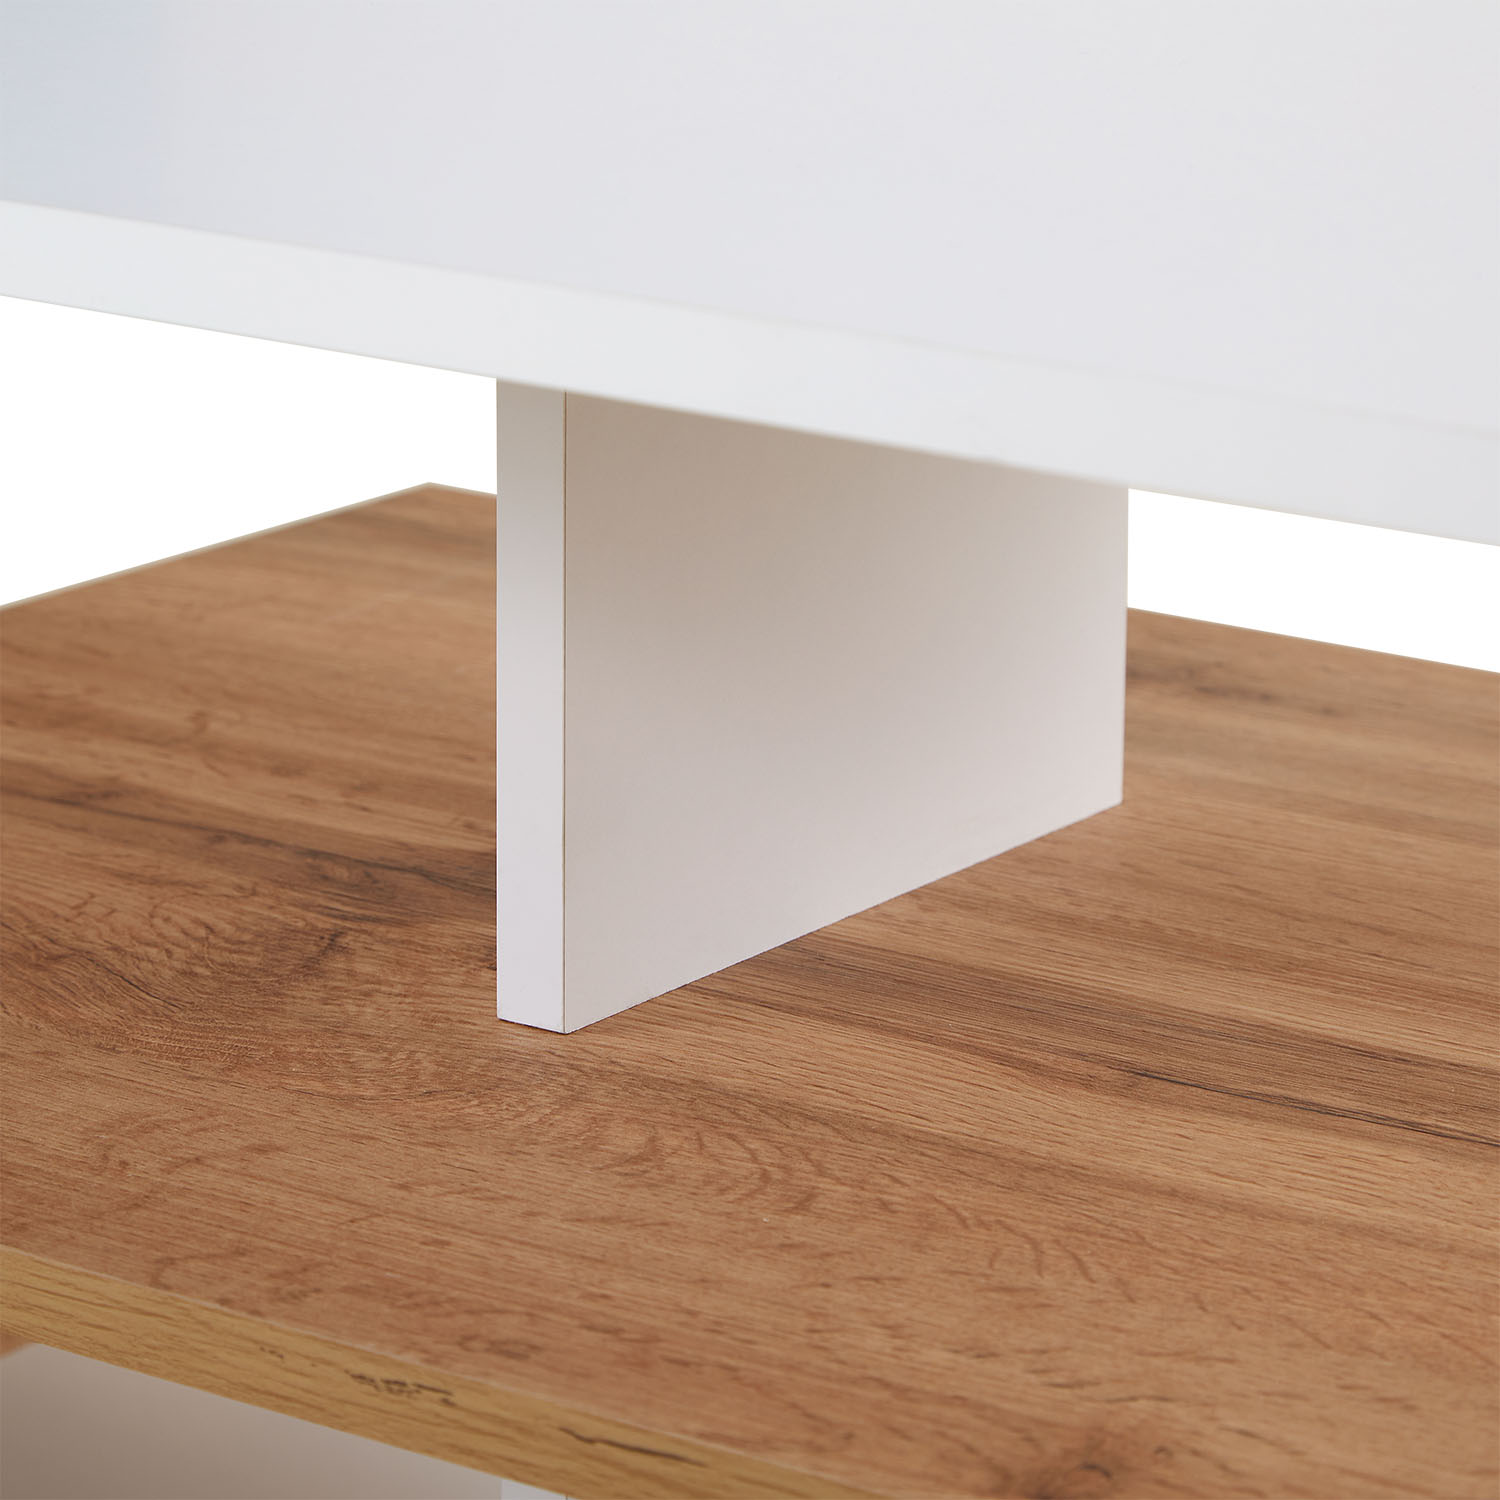 Couchtisch 90x50 cm Sofatisch Weiß Holz Eiche Tisch Beistelltisch Modern Holztisch Wohnzimmertisch